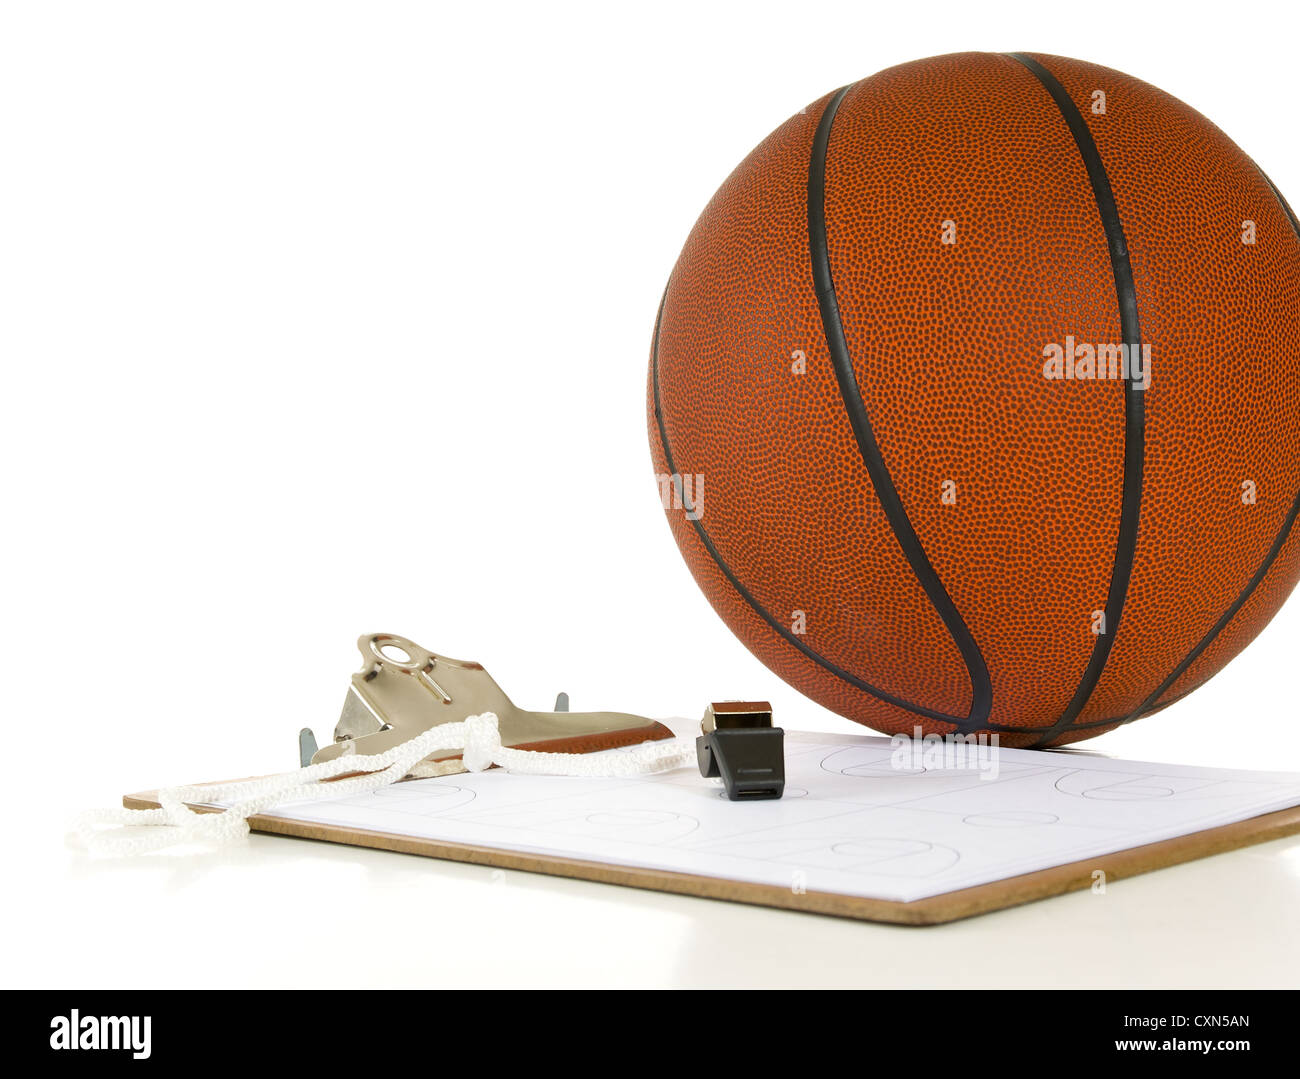 Zwischenablage, Pfeife, Zwischenablage und Ball - würden Elemente pro Trainer verwenden, wenn coaching oder Lehre Basketball auf weißem Hintergrund Stockfoto